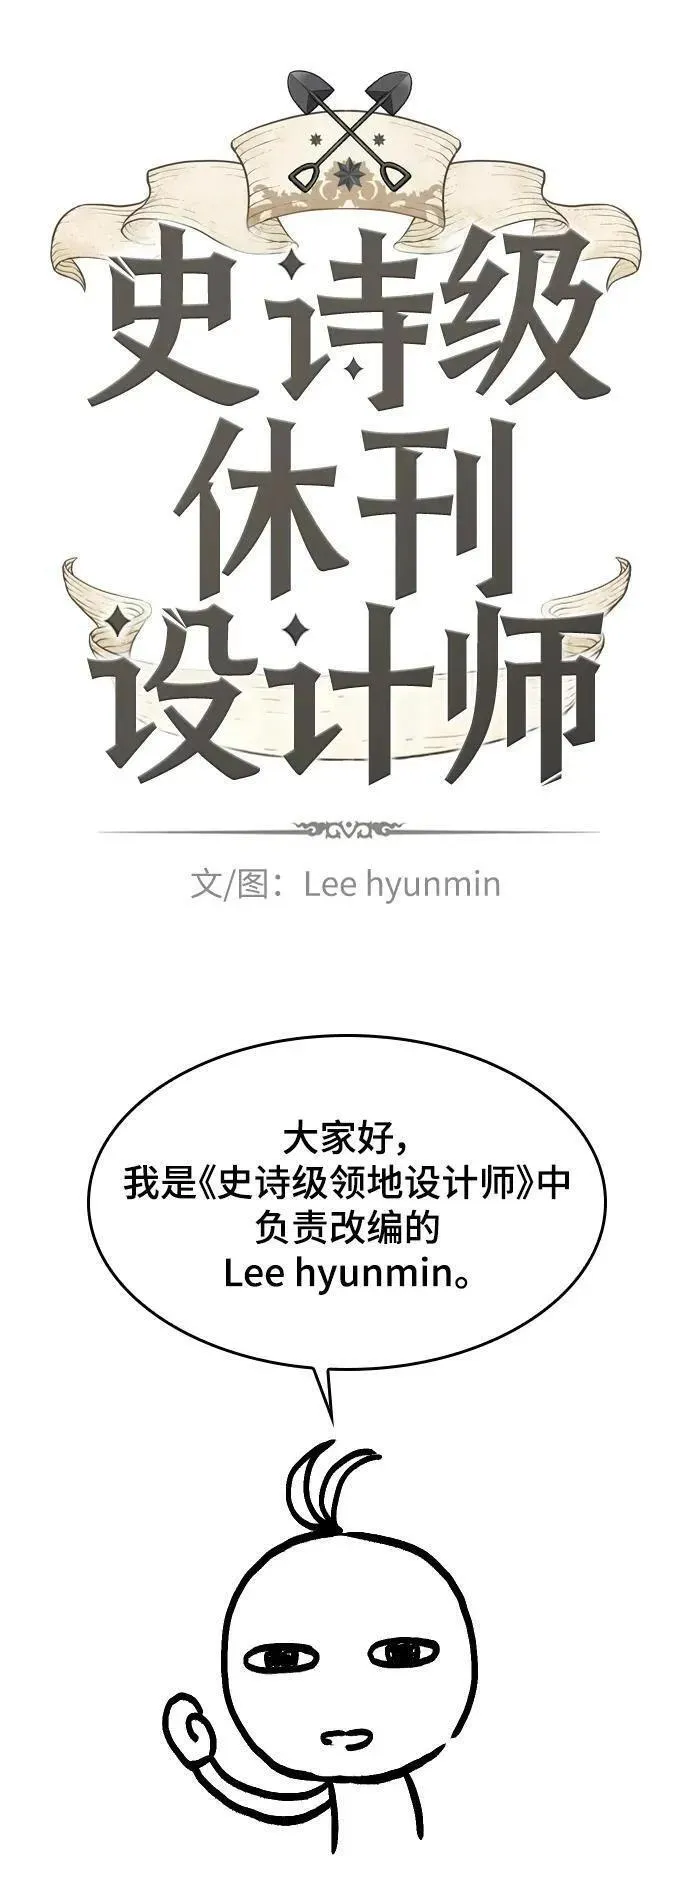 【免费】休刊特别篇1（Lee hyunmin&BK_Moon作家）1